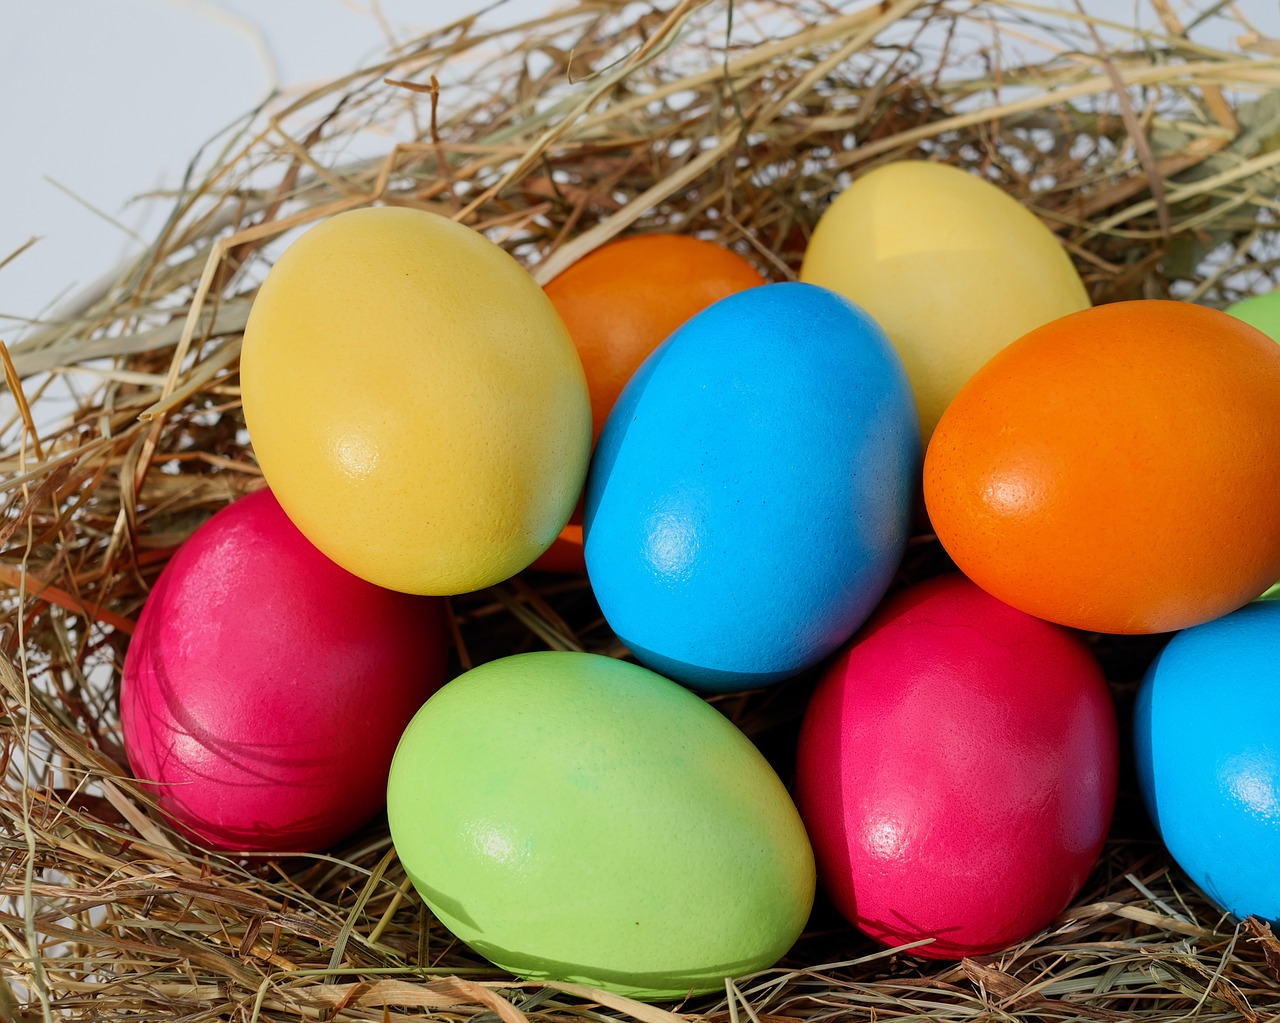 Rusko zakazuje Veľkú noc, pretože farebné vajíčka údajne podporujú LGBT komunitu